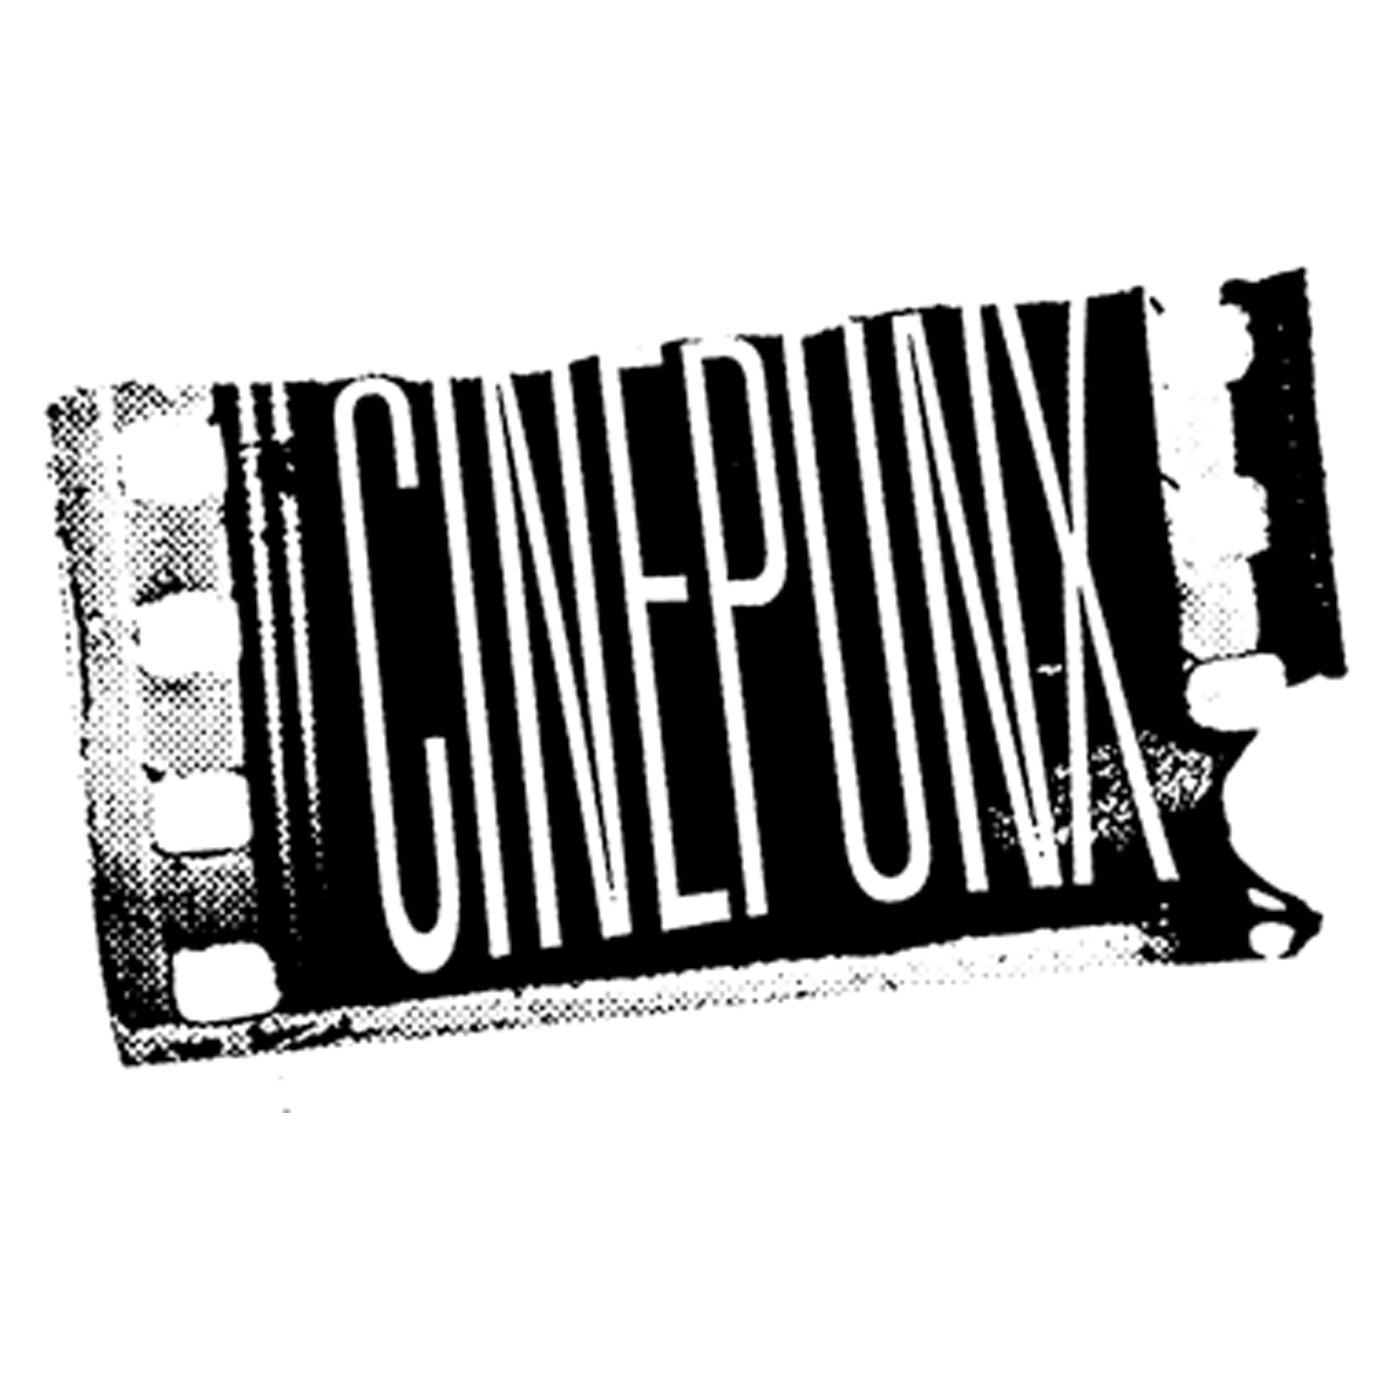 Cinepunx Podcast artwork